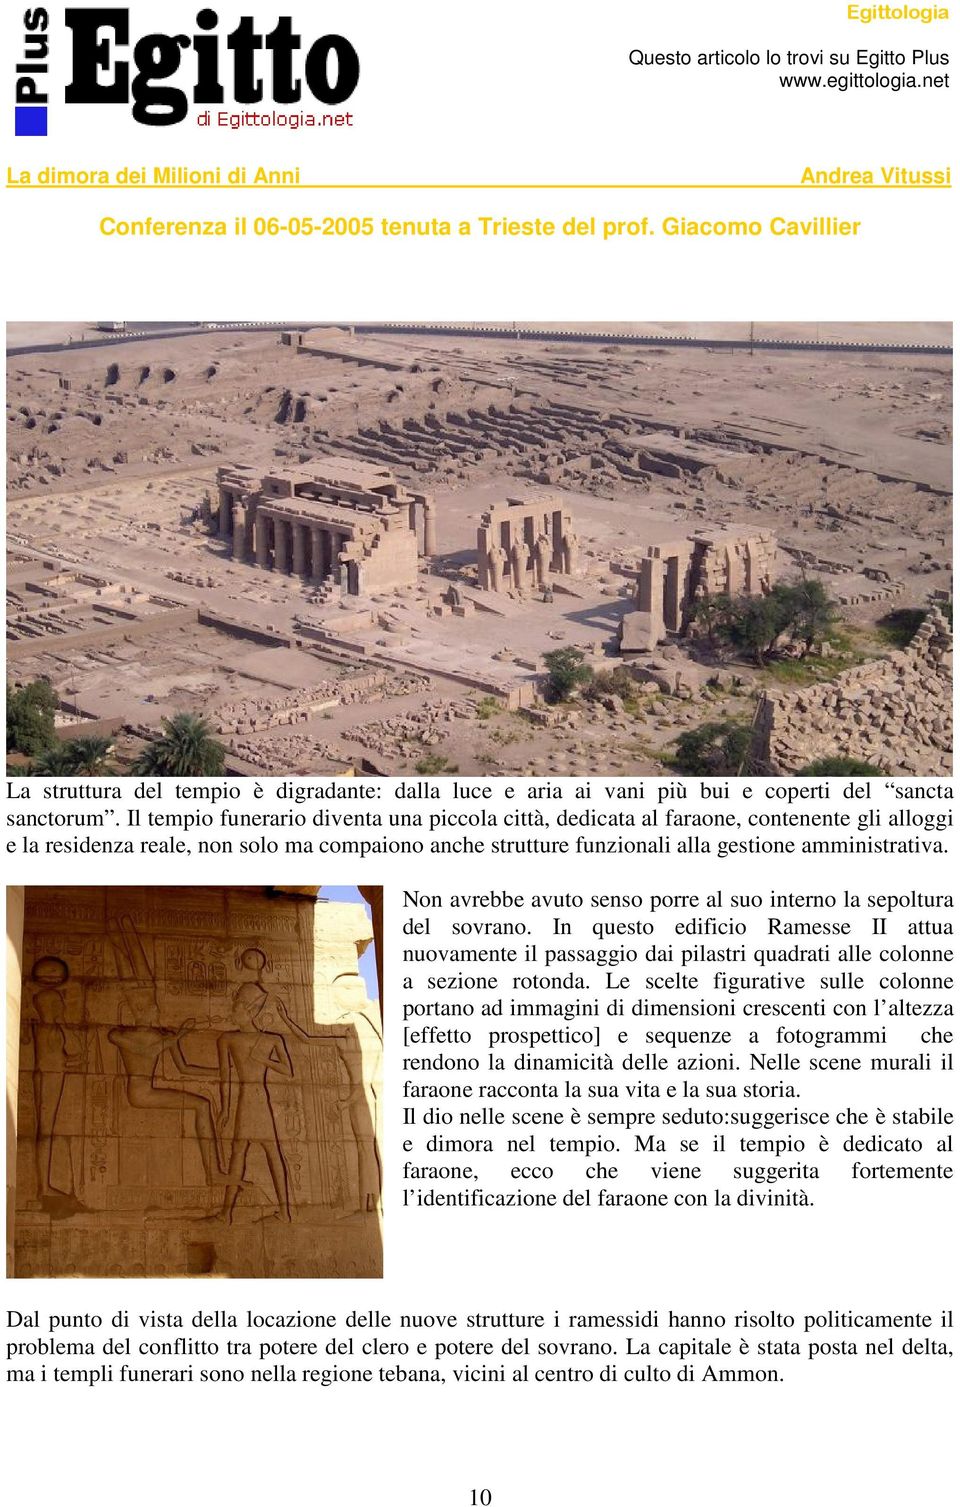 Non avrebbe avuto senso porre al suo interno la sepoltura del sovrano. In questo edificio Ramesse II attua nuovamente il passaggio dai pilastri quadrati alle colonne a sezione rotonda.